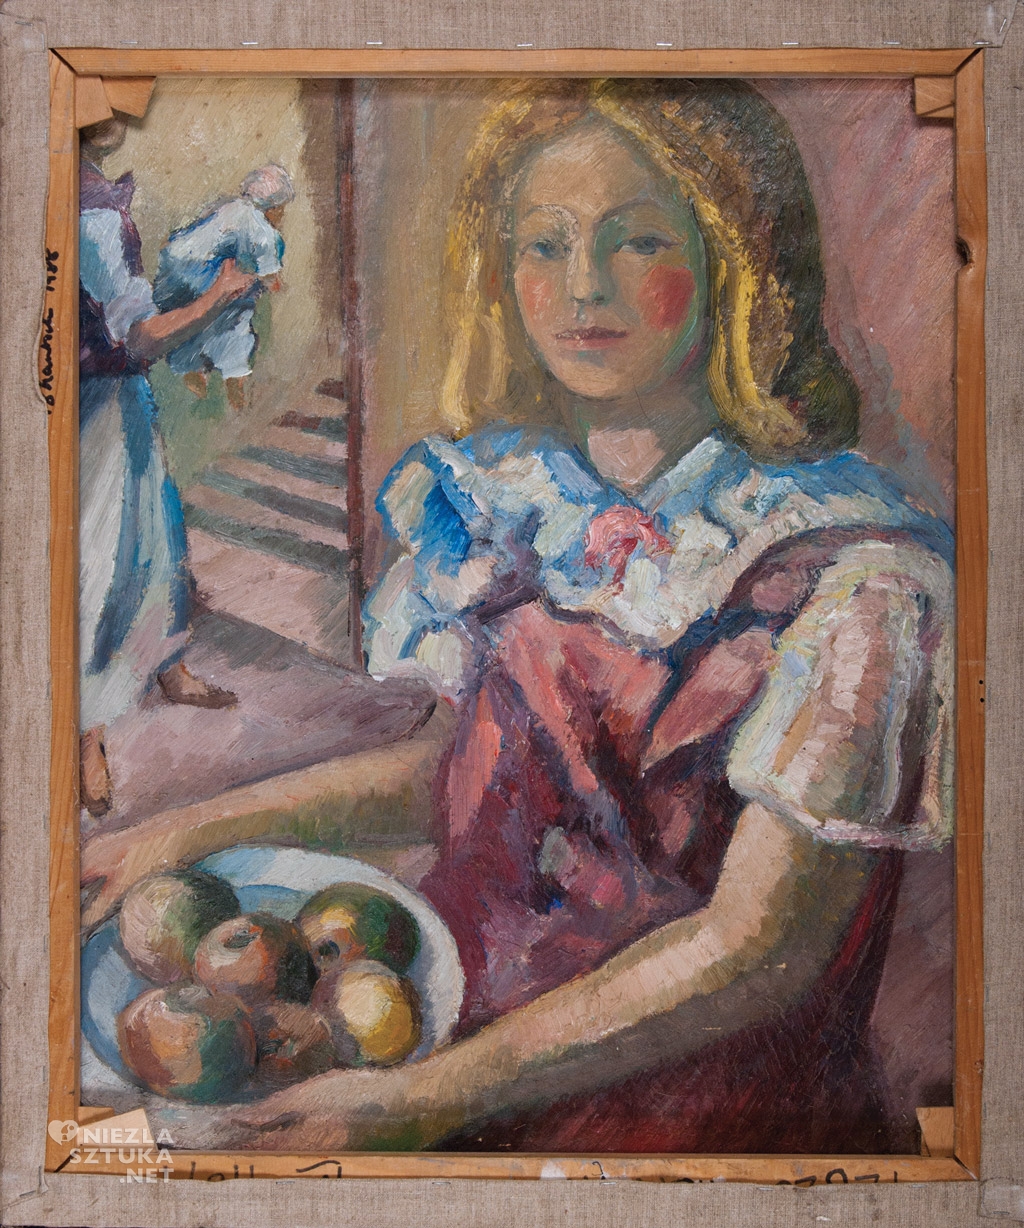 Mela Muter, Dziewczyna z koszem jabłek, kobiety w sztuce, sztuka polska, niezła sztuka